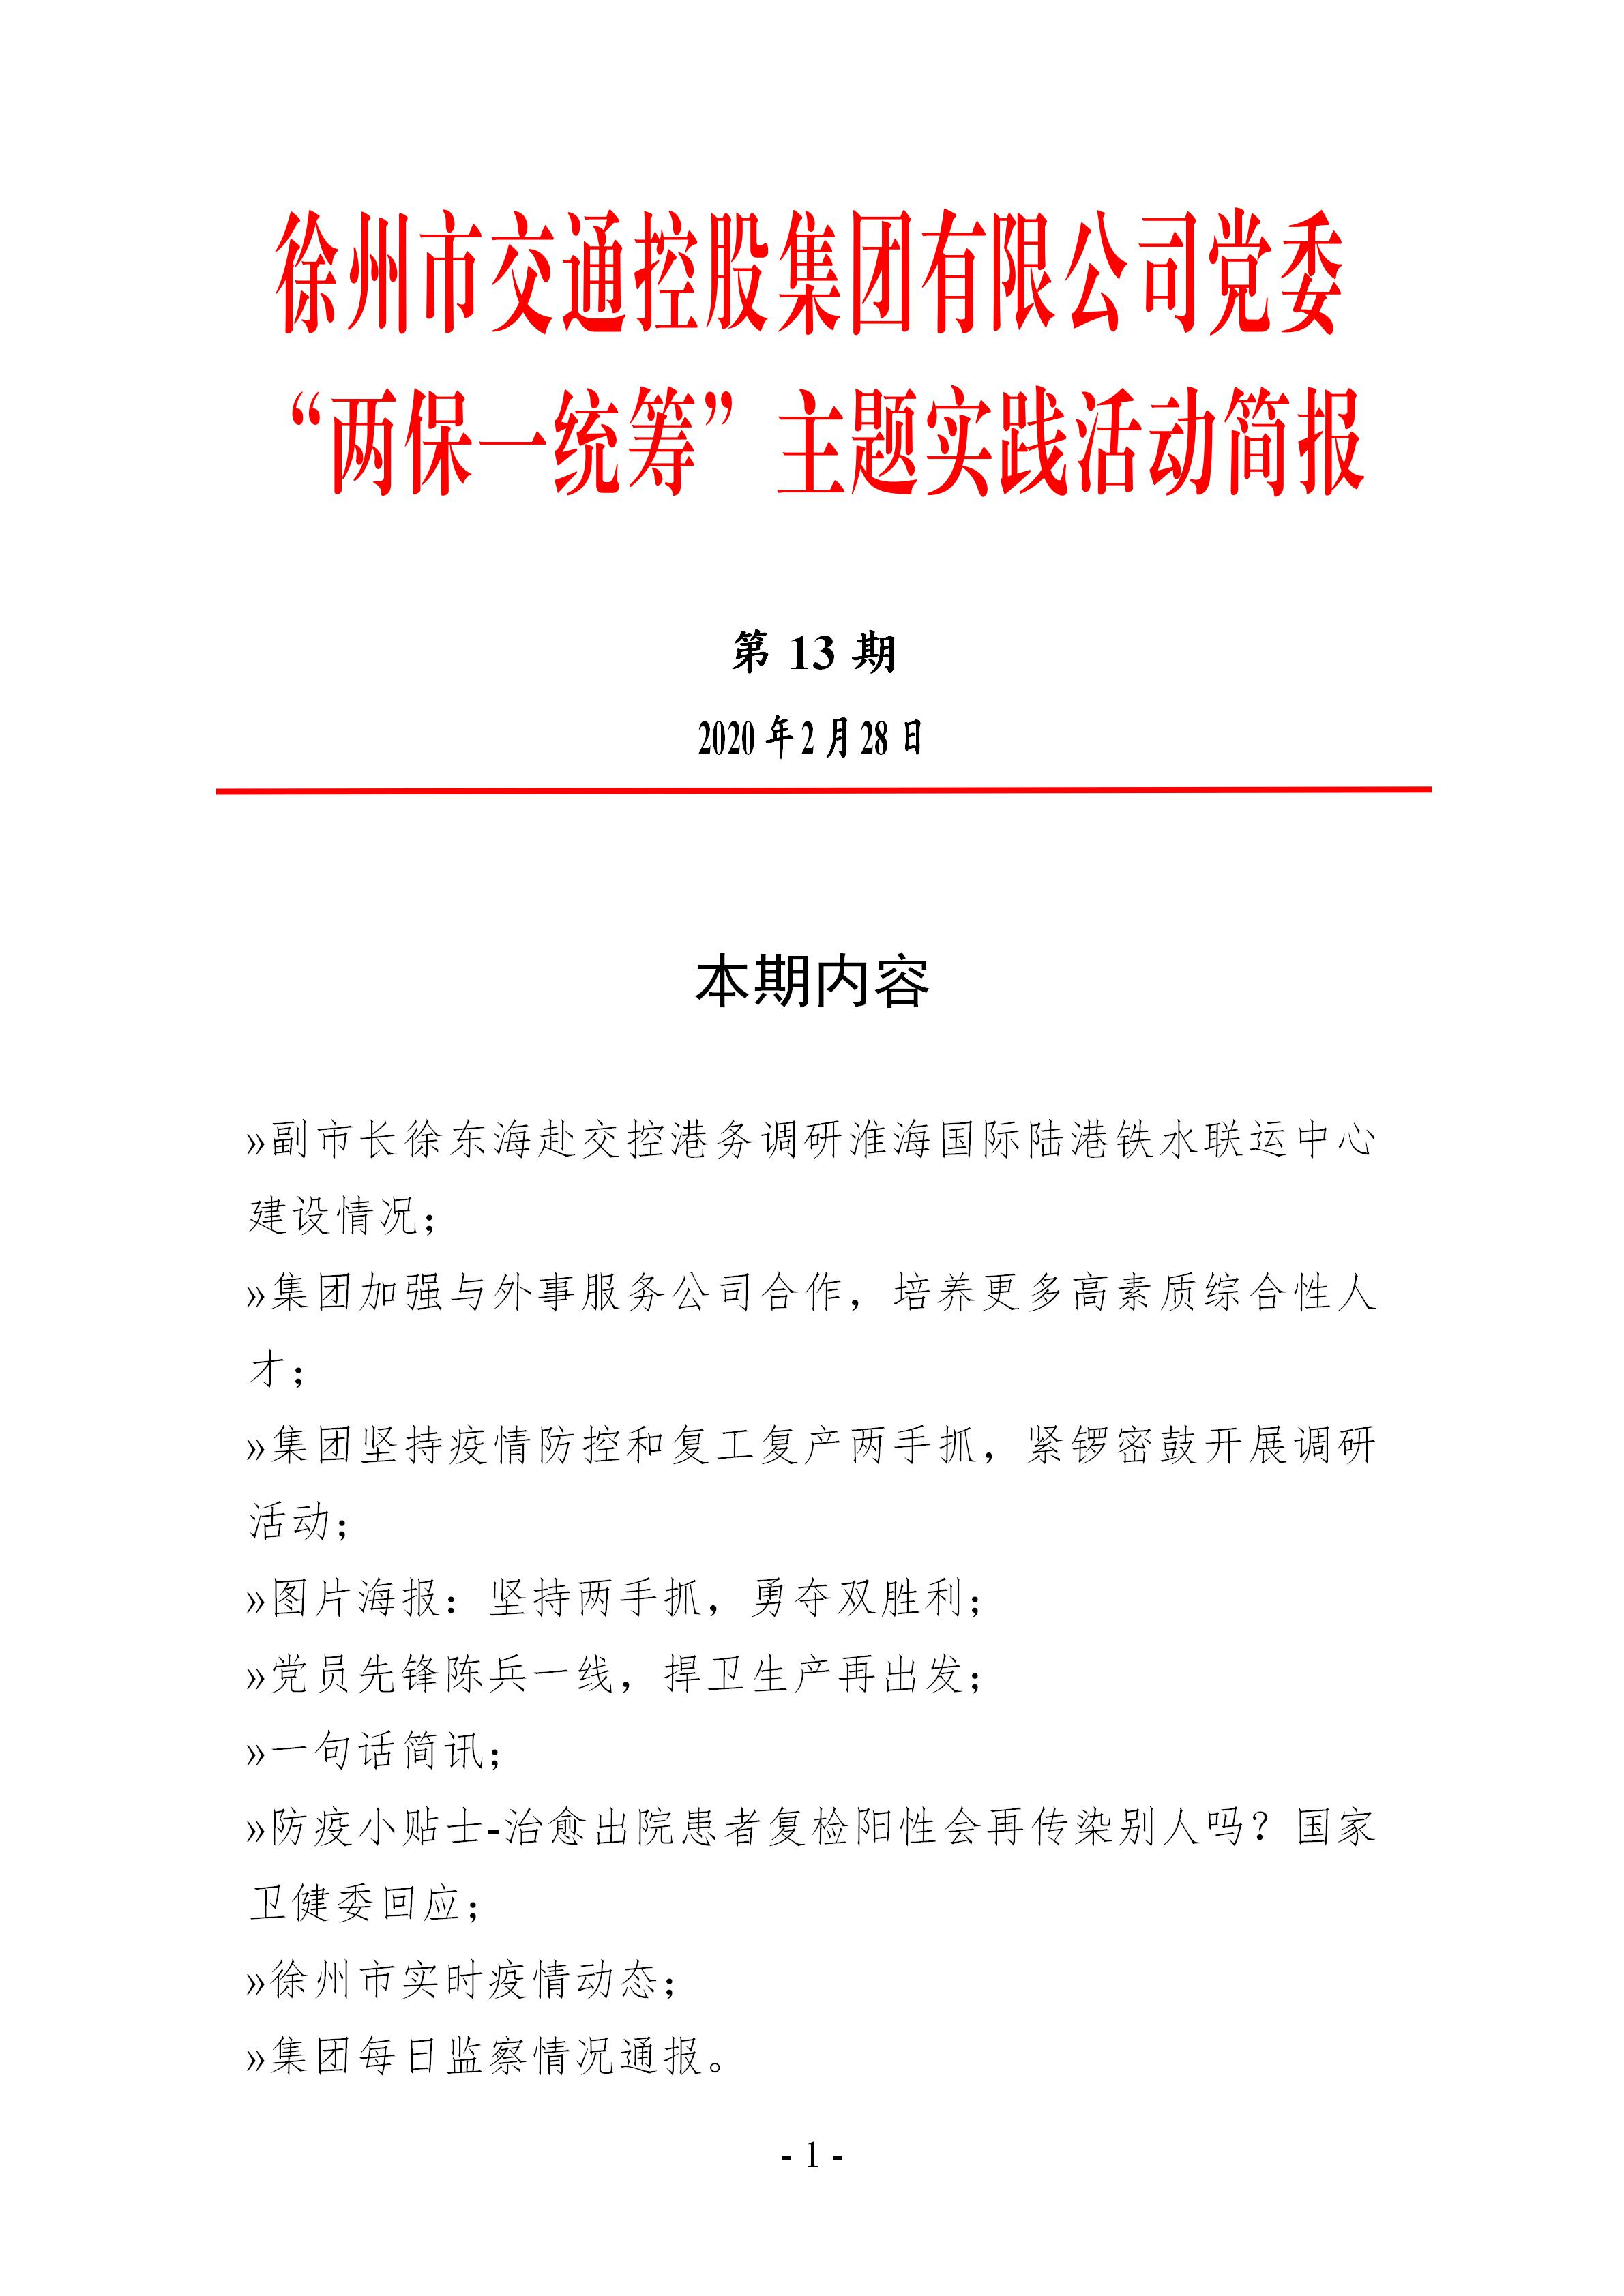 （第十三期2.28）徐州市交通控股集团党委“两保一统筹”主题实践活动简报